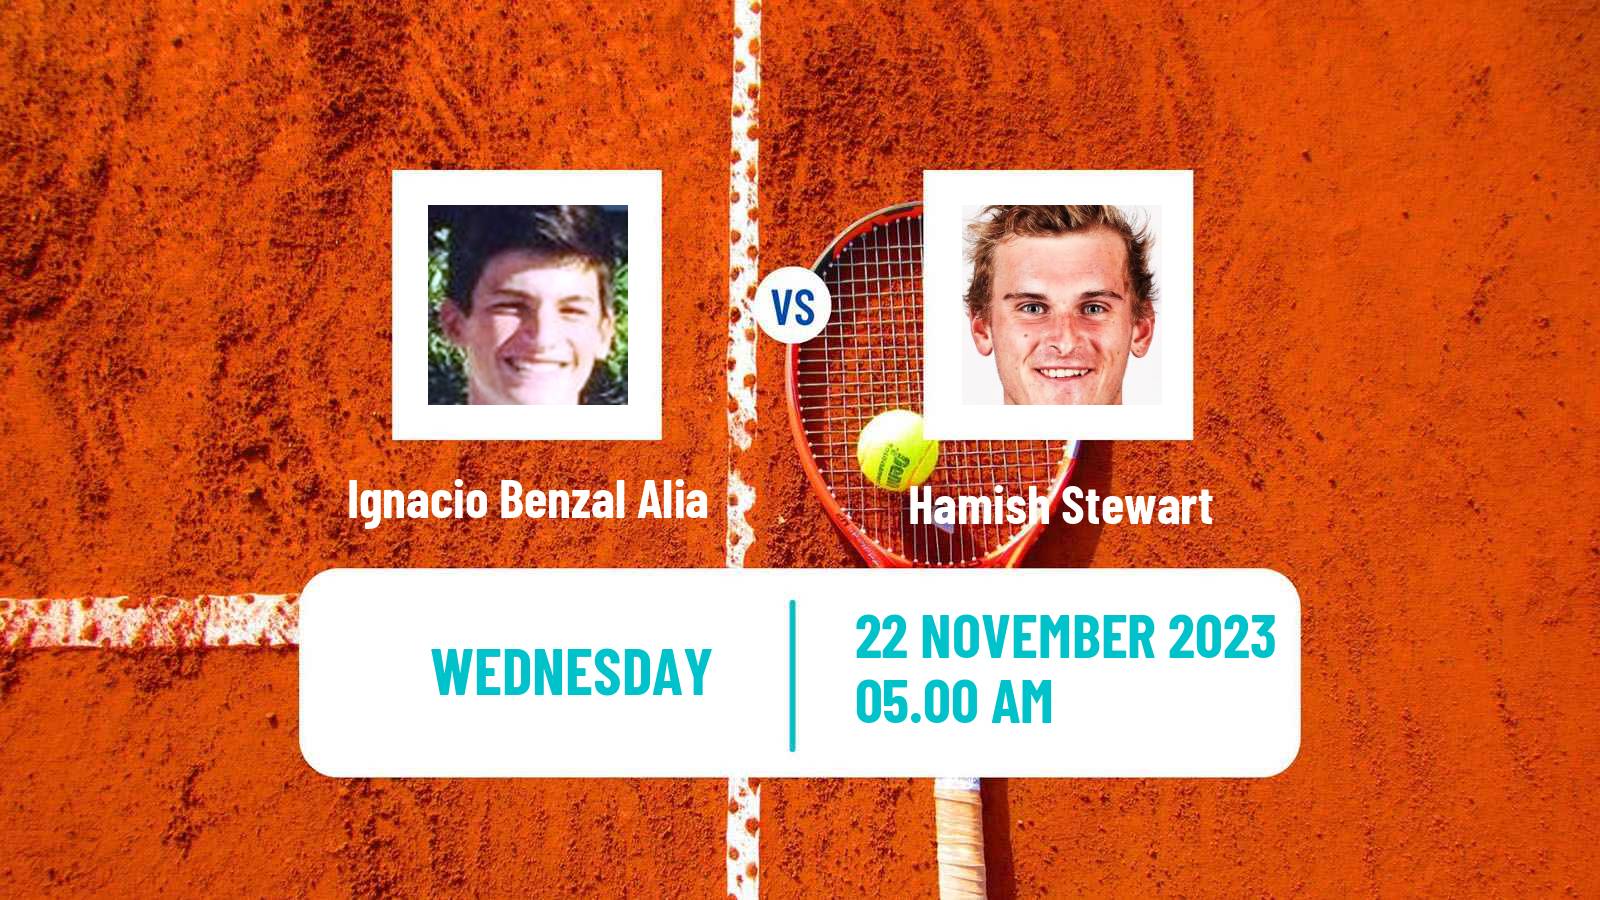 Tennis ITF M15 Alcala De Henares Men Ignacio Benzal Alia - Hamish Stewart